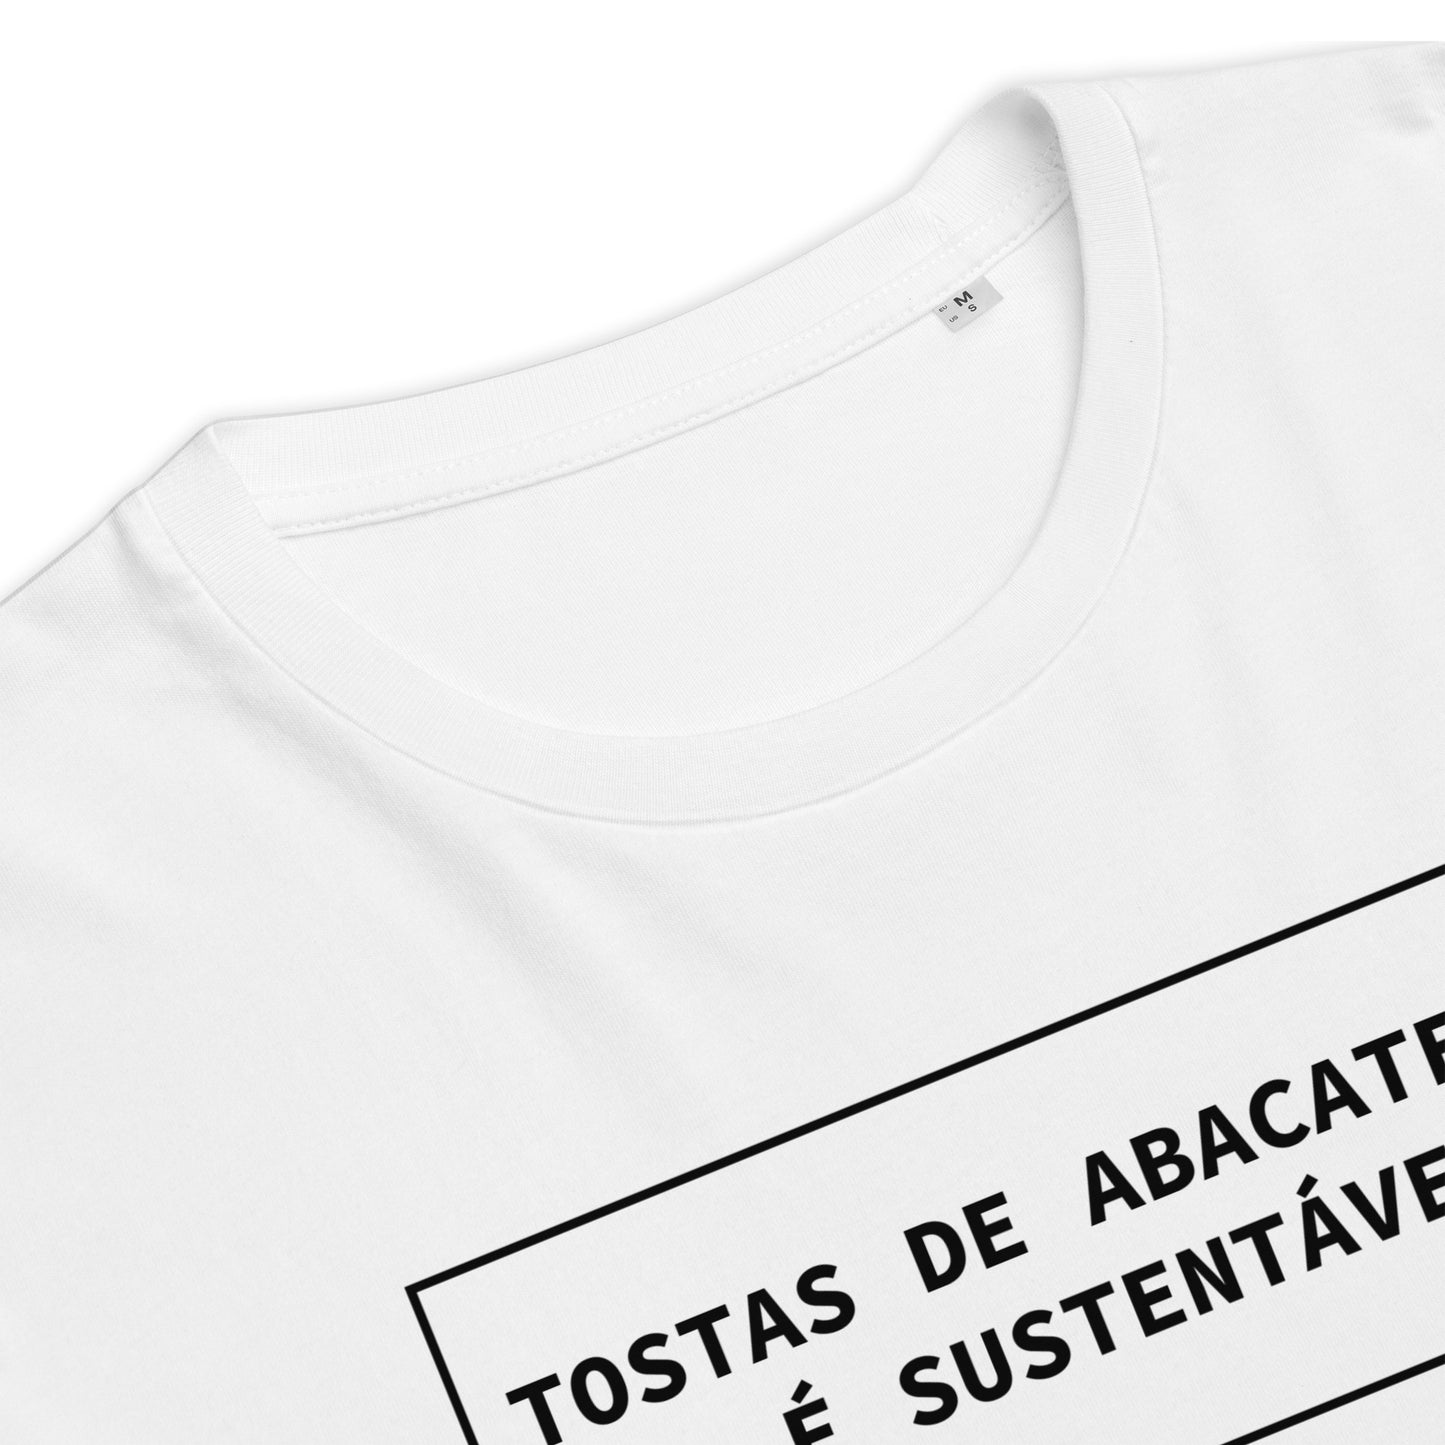 T-shirt Ralhenta Tostas de abacate não é sustentável